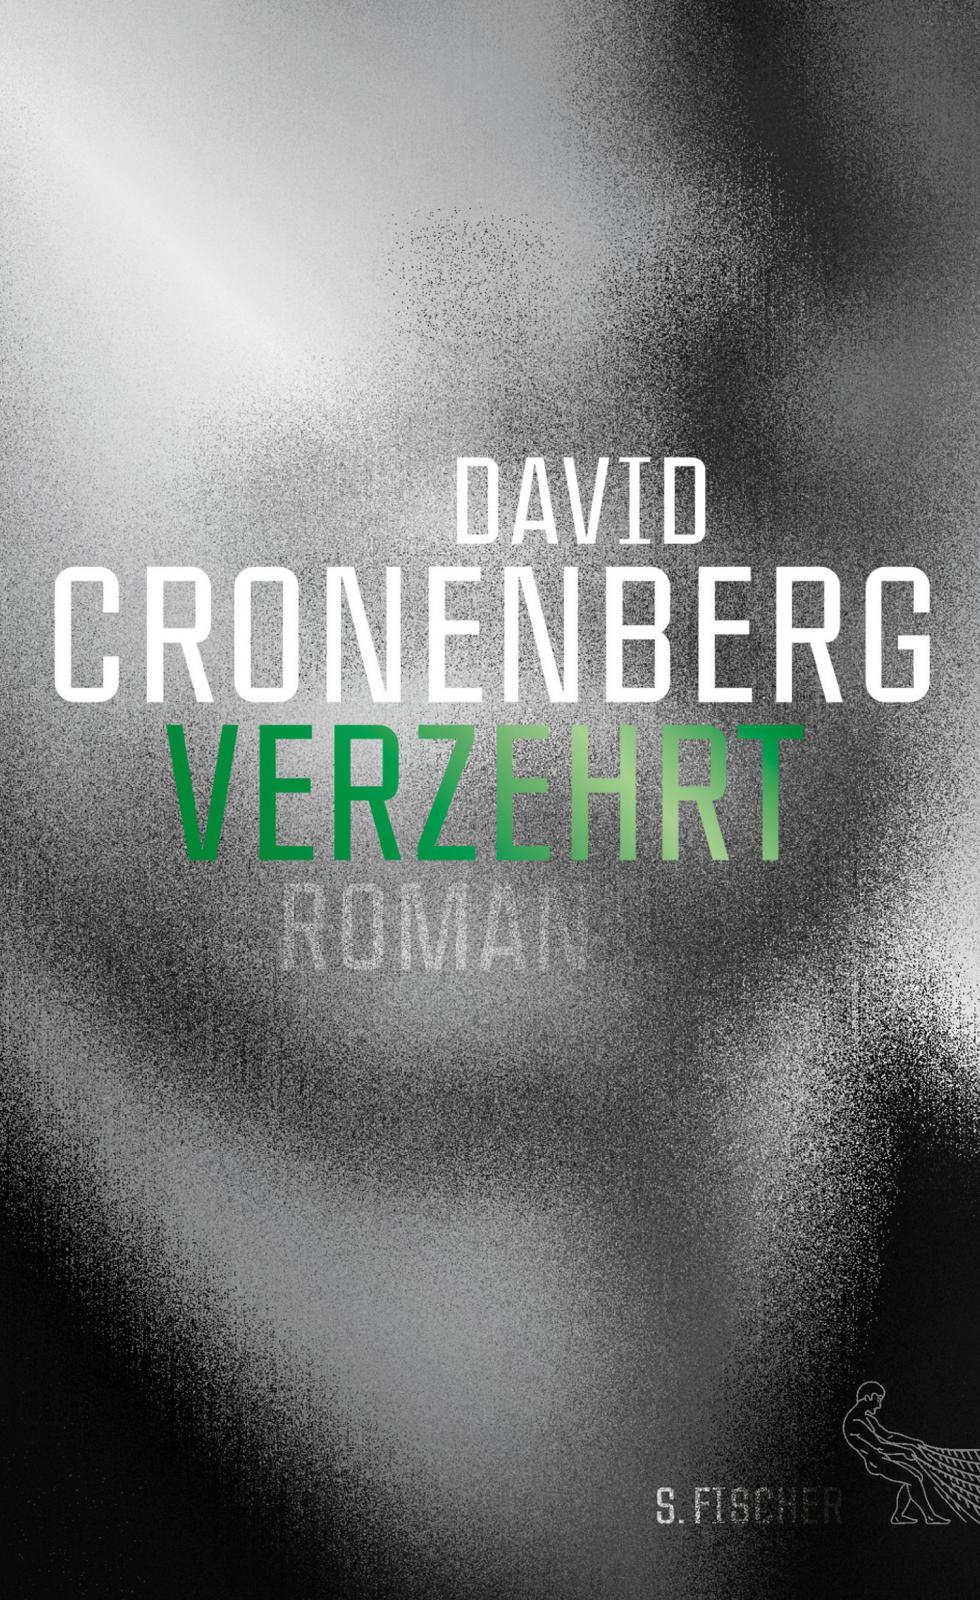 David Cronenberg: Verzehrt